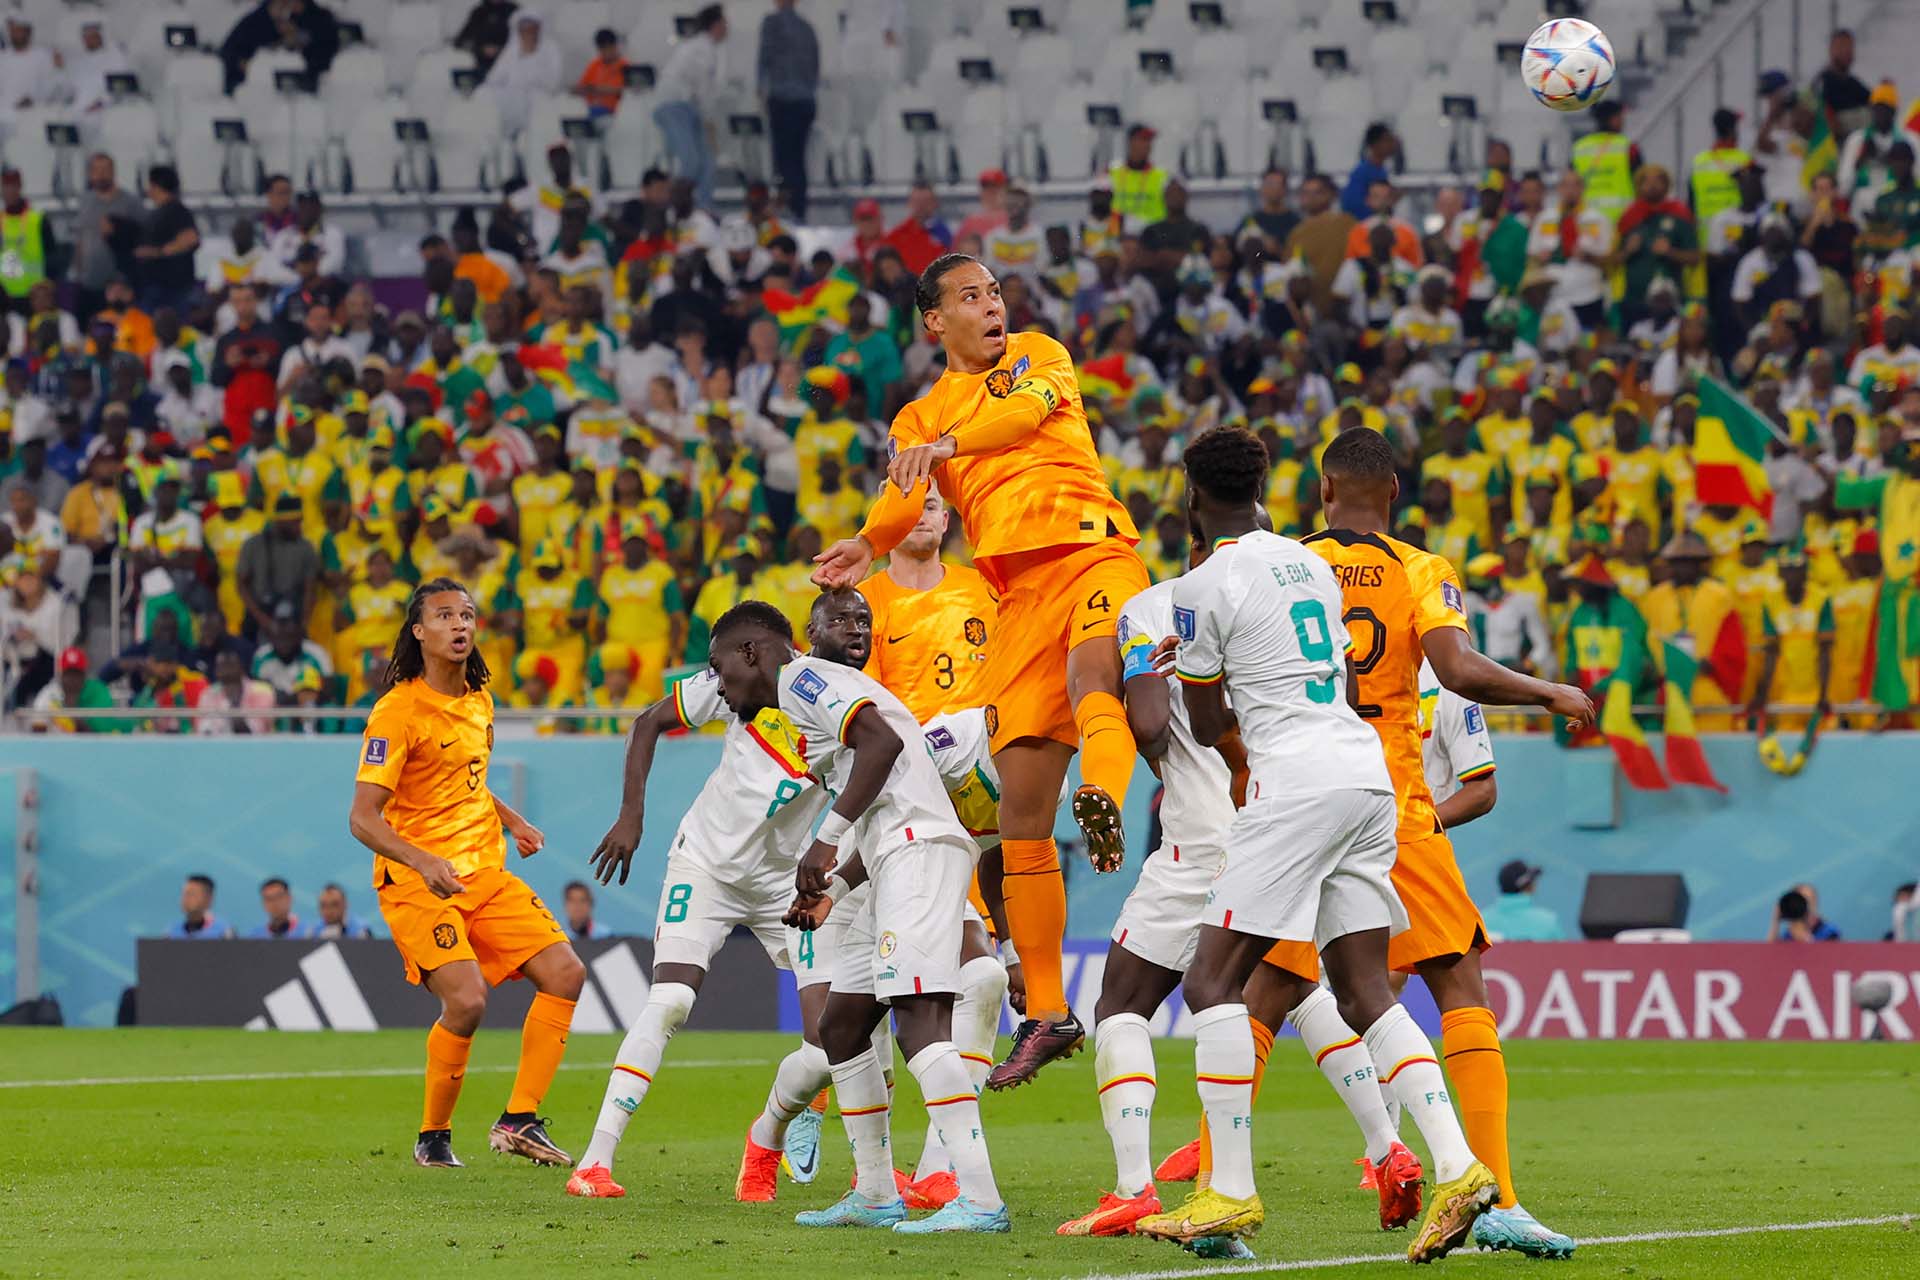 El neerlandés Virgil van Dijk gana en el aire en una postal del duelo ante Senegal. Fue triunfo de su equipo 2-0, en el encuentro que cerró la primera fecha del Grupo A